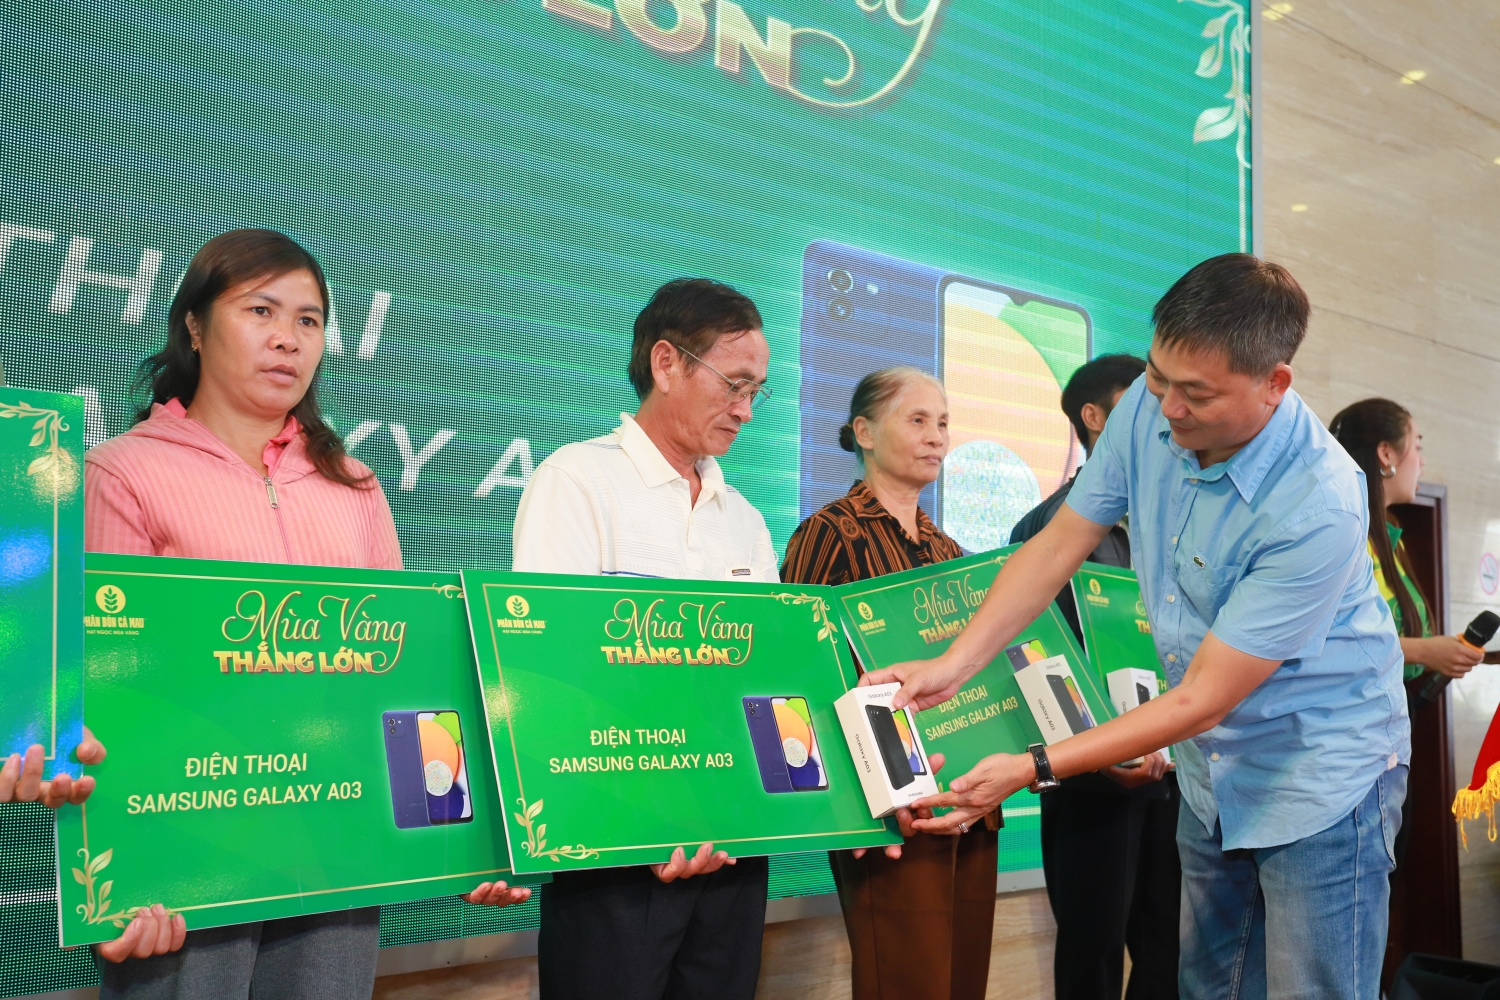 Chương trình “Mùa vàng thắng lớn” của PVCFC: Canh nông hiệu quả, nhận quà giá trị